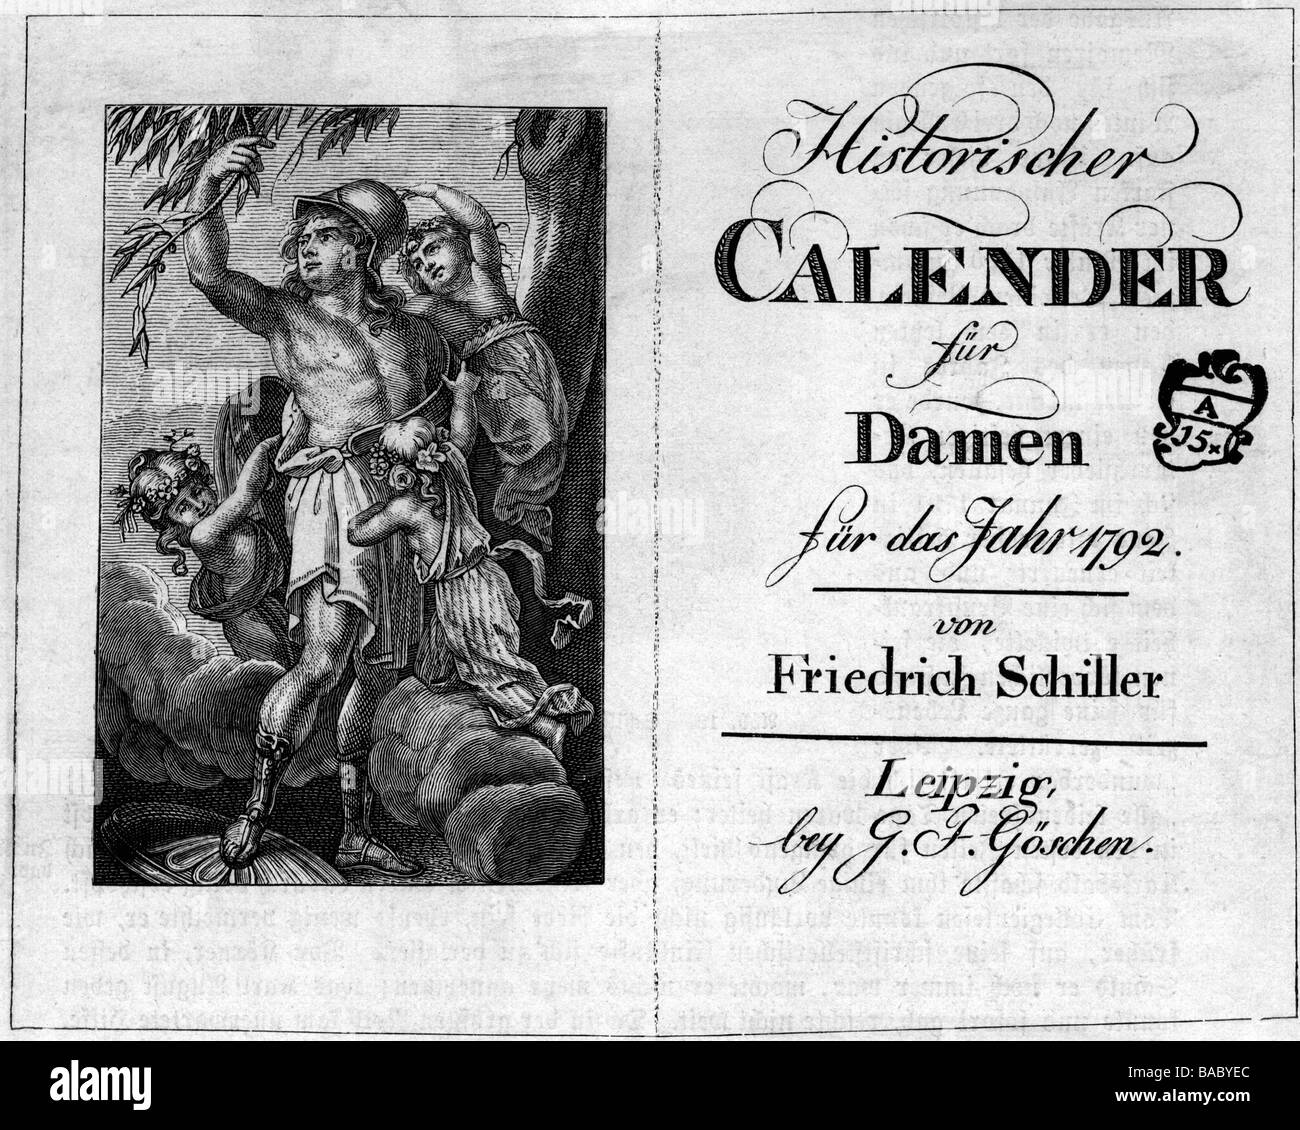 Schiller, Friedrich, 10.11.1759 - 9.5.1805, German author / writer, 'Historischer Kalender für Damen', 1793, published by Georg Joachim Göschen, Leipzig, title, Stock Photo